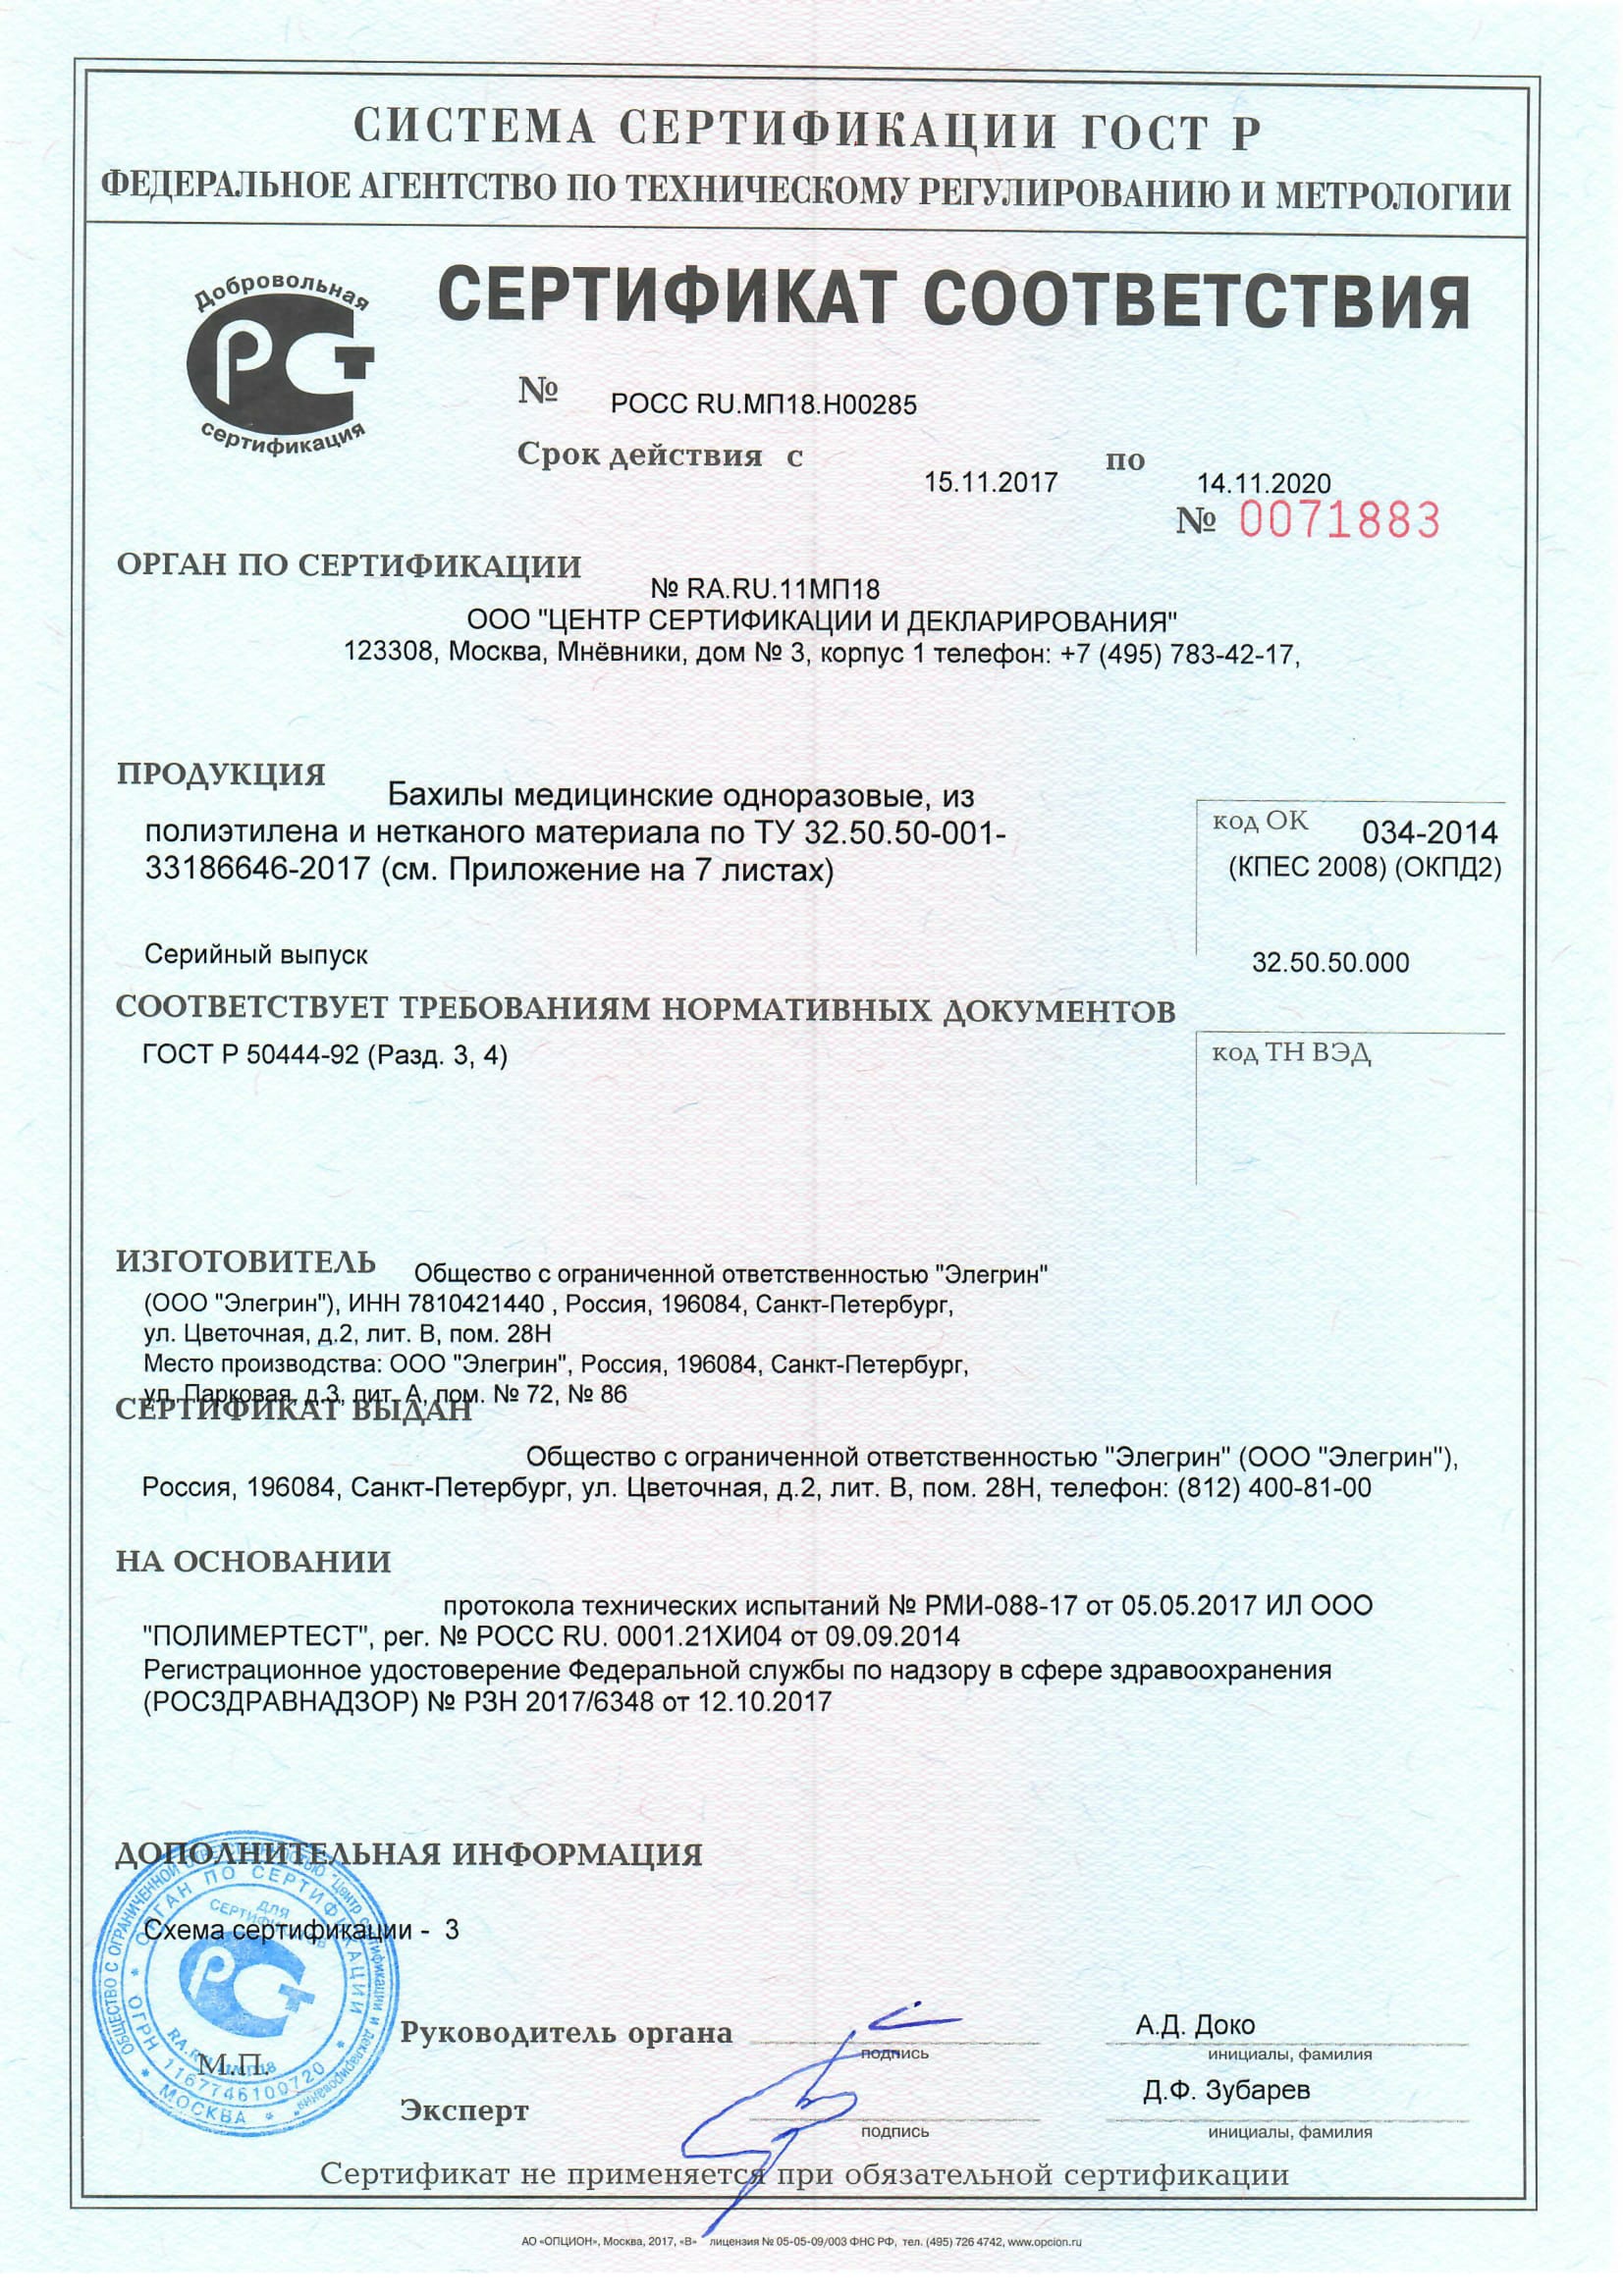 Бахилы медиц. Сертификат-соответствия-до 14.11.2020-1